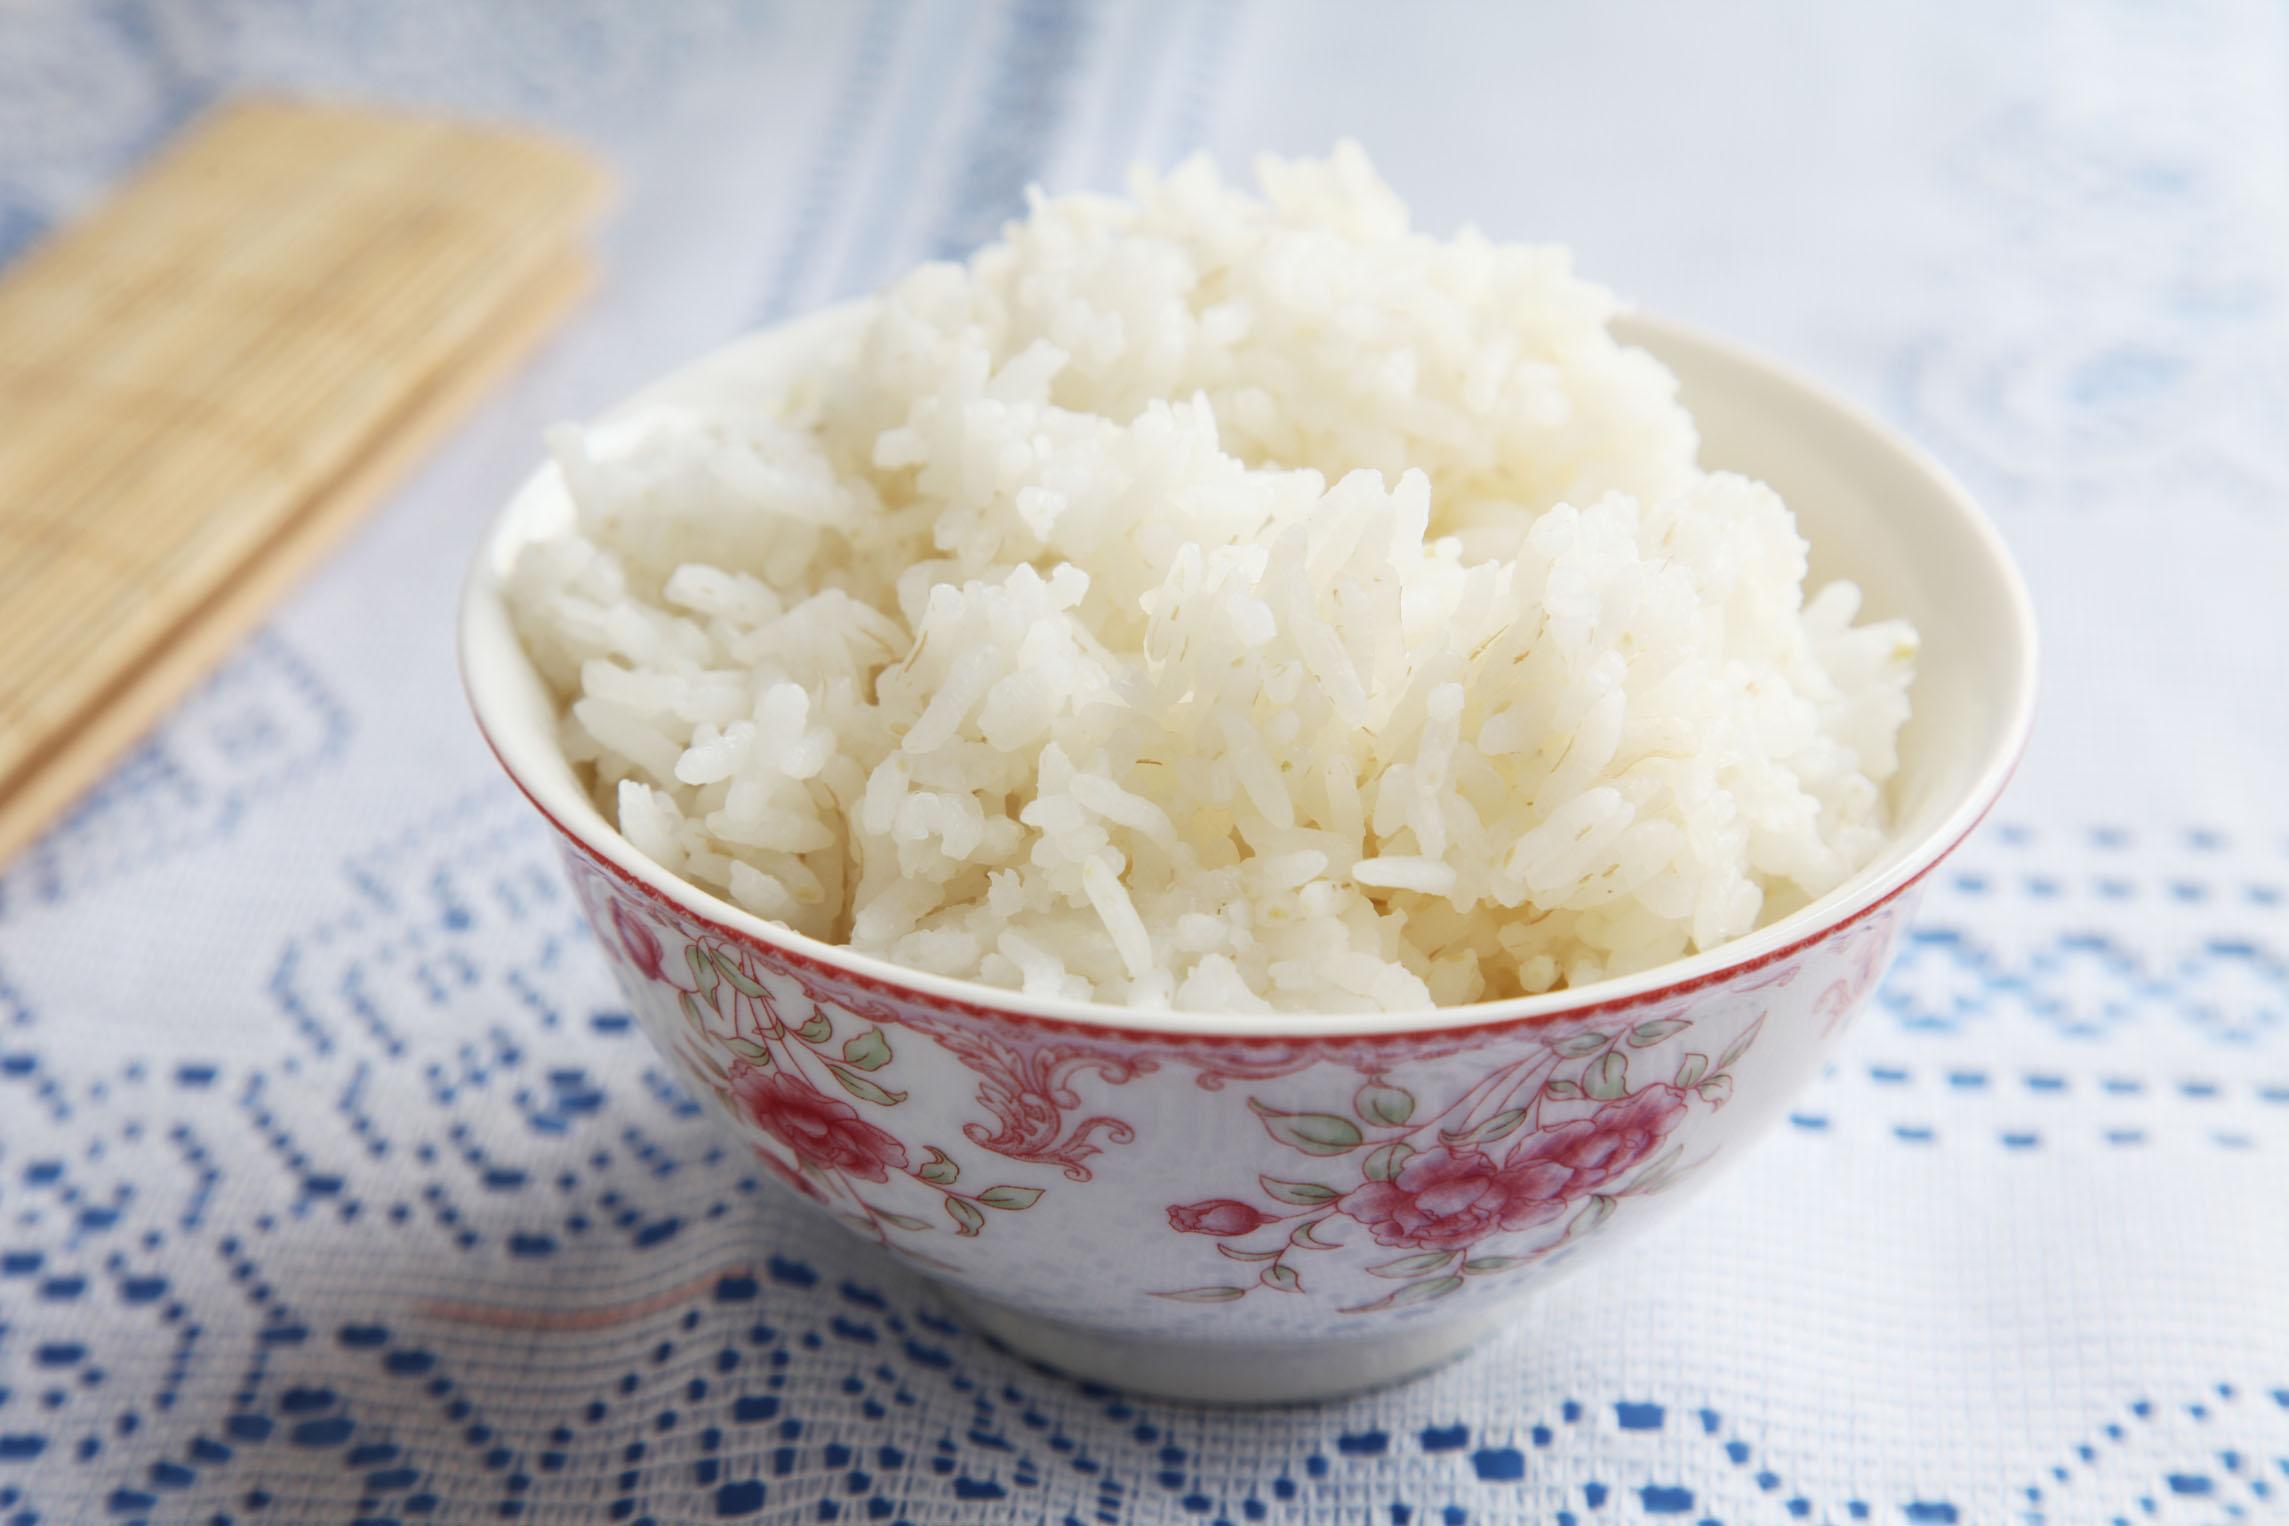 大米易得,好米却不常有,那些沉涩干硬的米饭难免倒人胃口